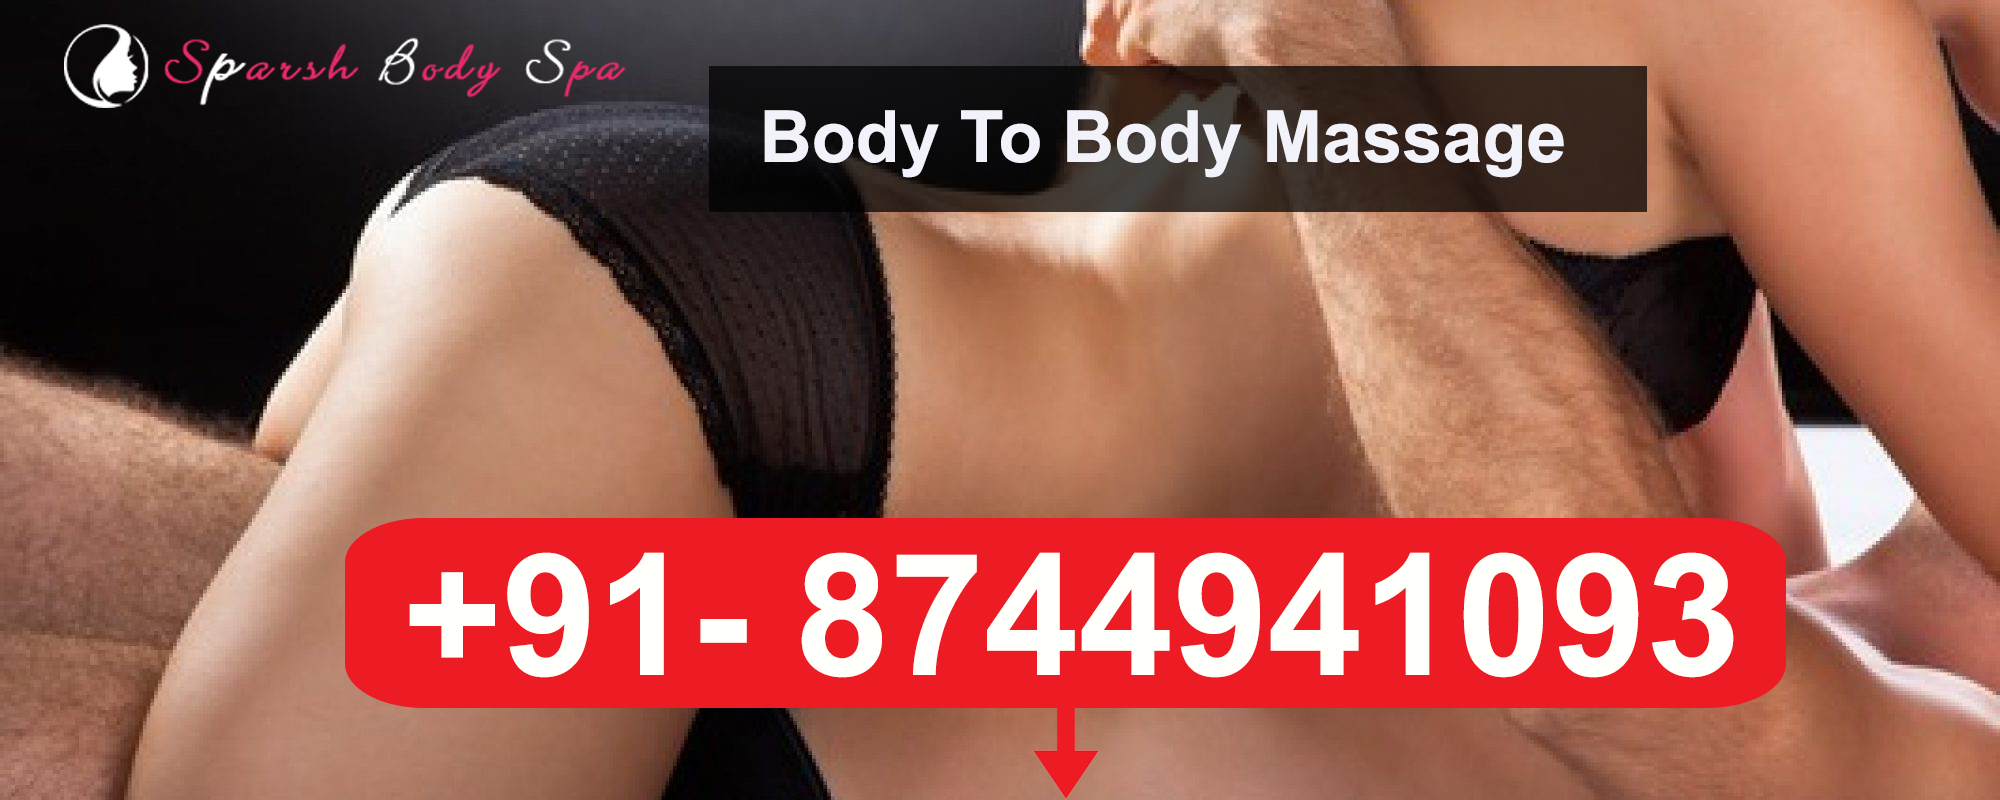 Delhi Massage Sex Videos - Body Massage Spa in Delhi Price Rohini, Pitampura â€“ Body to Body Massage in  Delhi by Female with Price